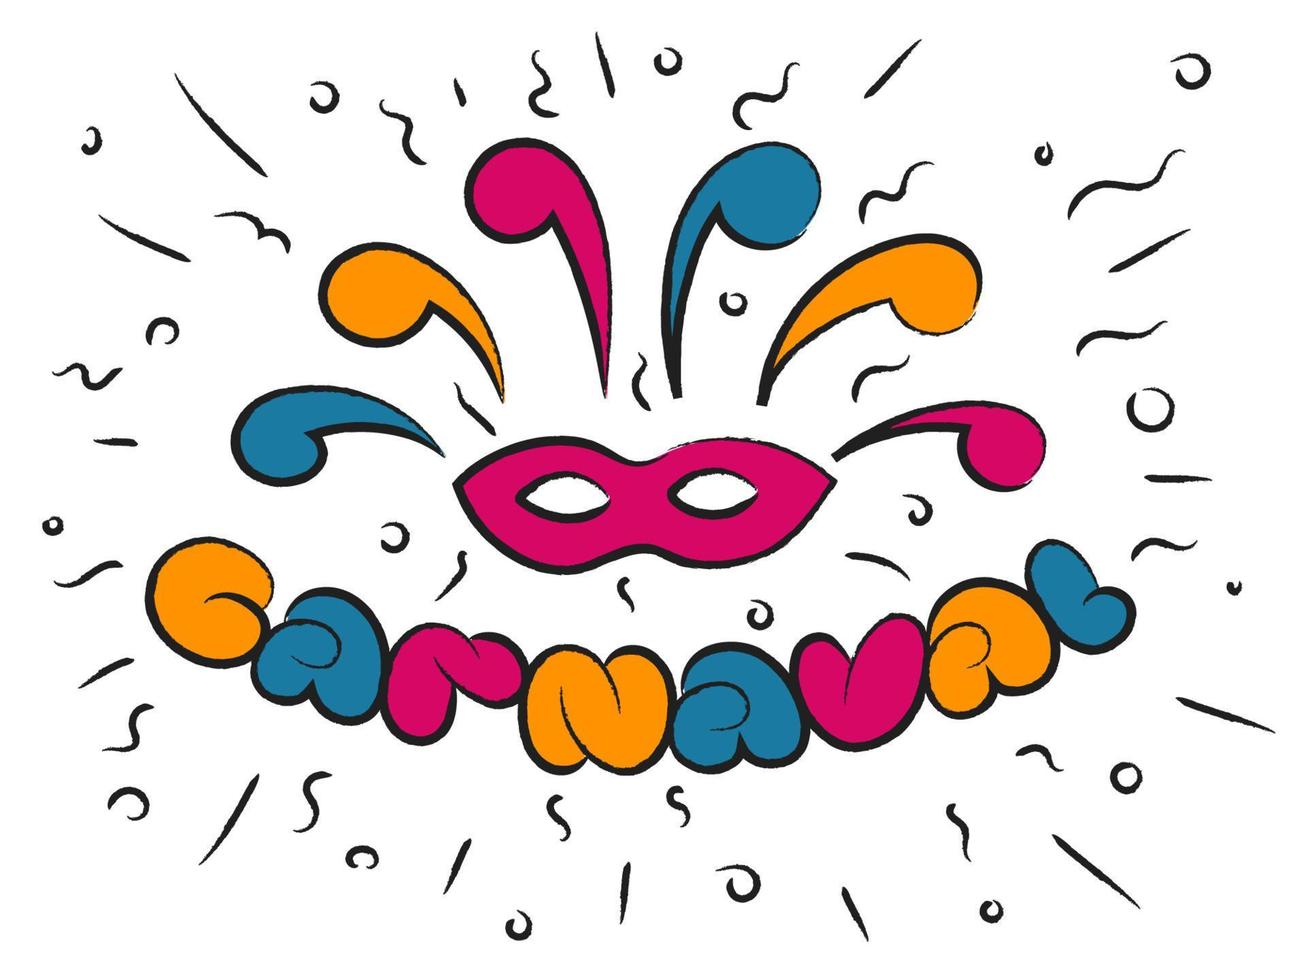 carnaval máscara de letras coloridas elementos de festa natalícia humor festivo ritmo dança música ilustração vetorial vetor